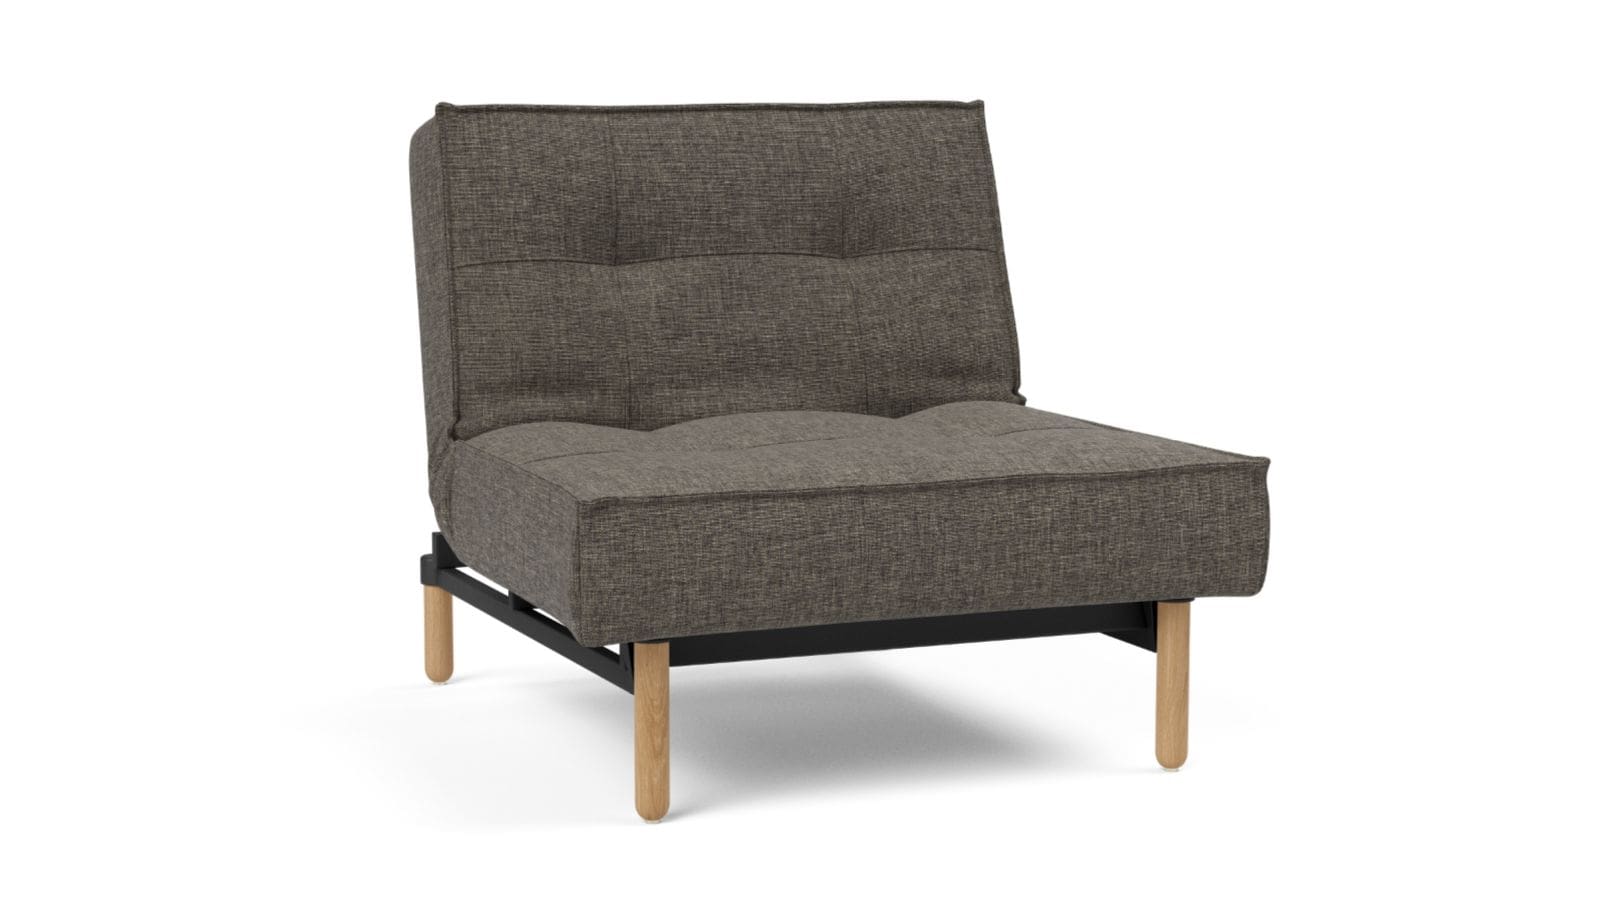 SPLITBACK STEM, fotel rozkładany, fotel w stylu skandynawskim, wielofunkcyjny fotel, nowoczesny fotel